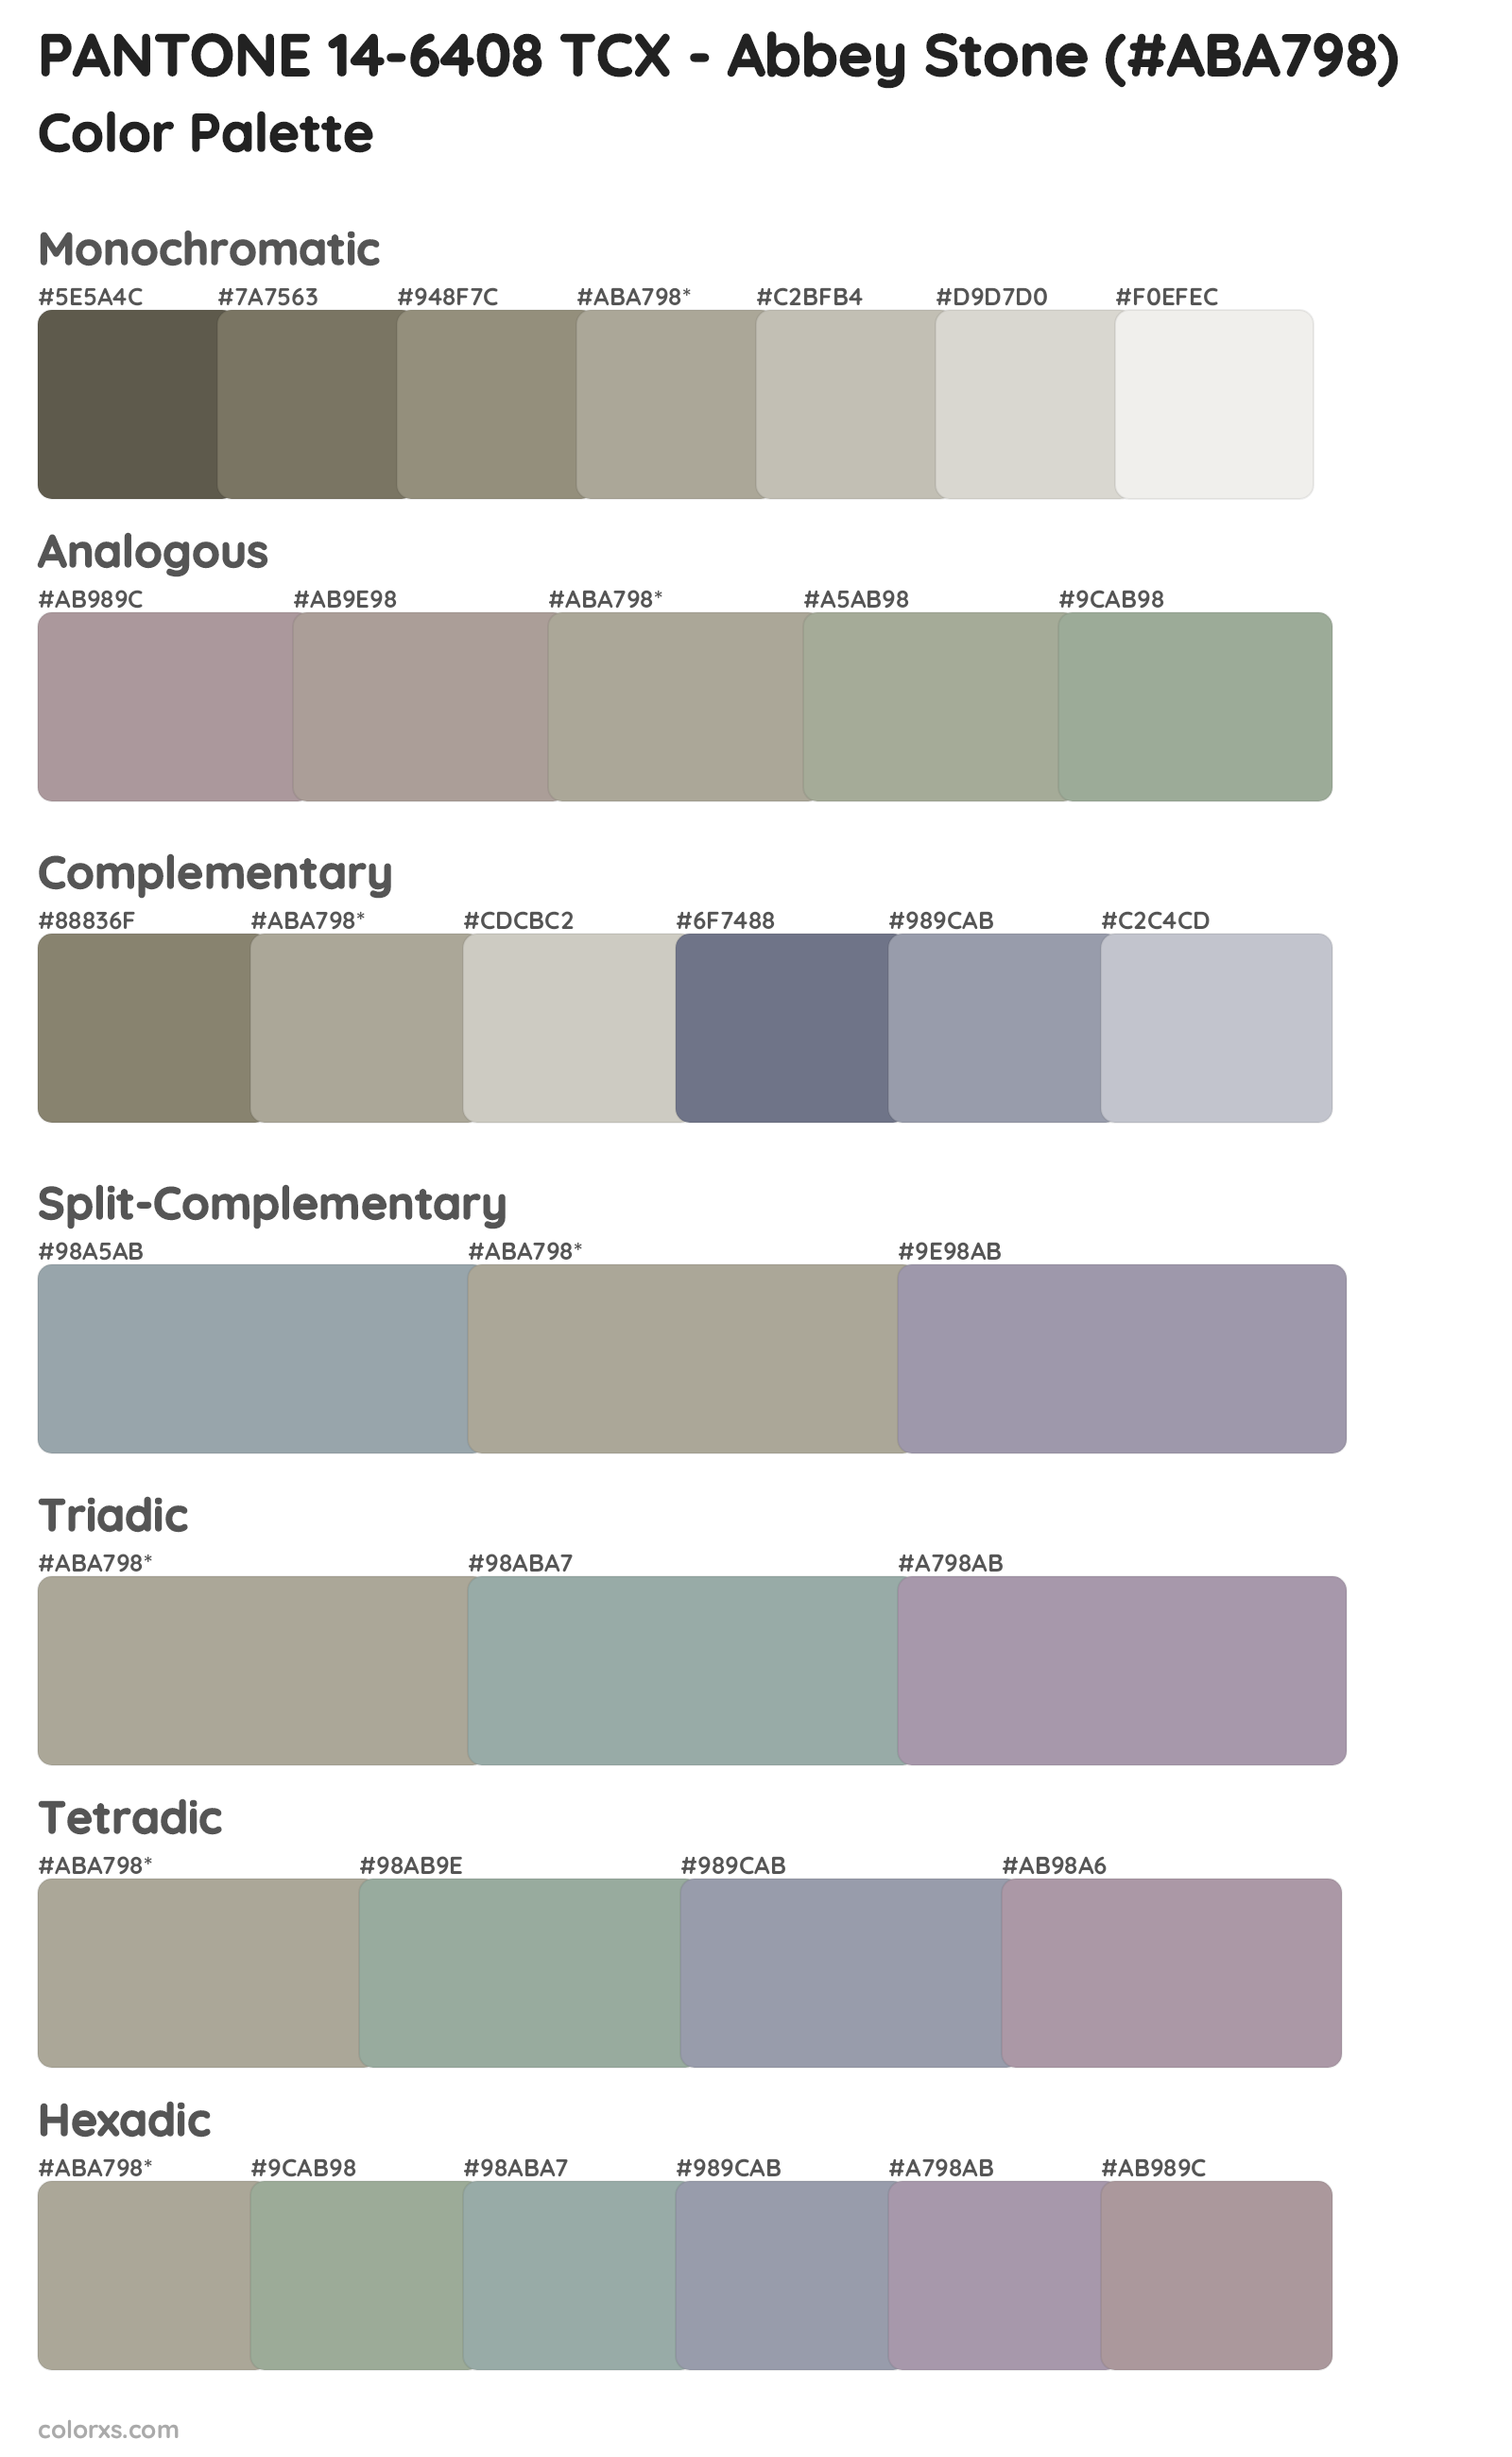 PANTONE 14-6408 TCX - Abbey Stone Color Scheme Palettes